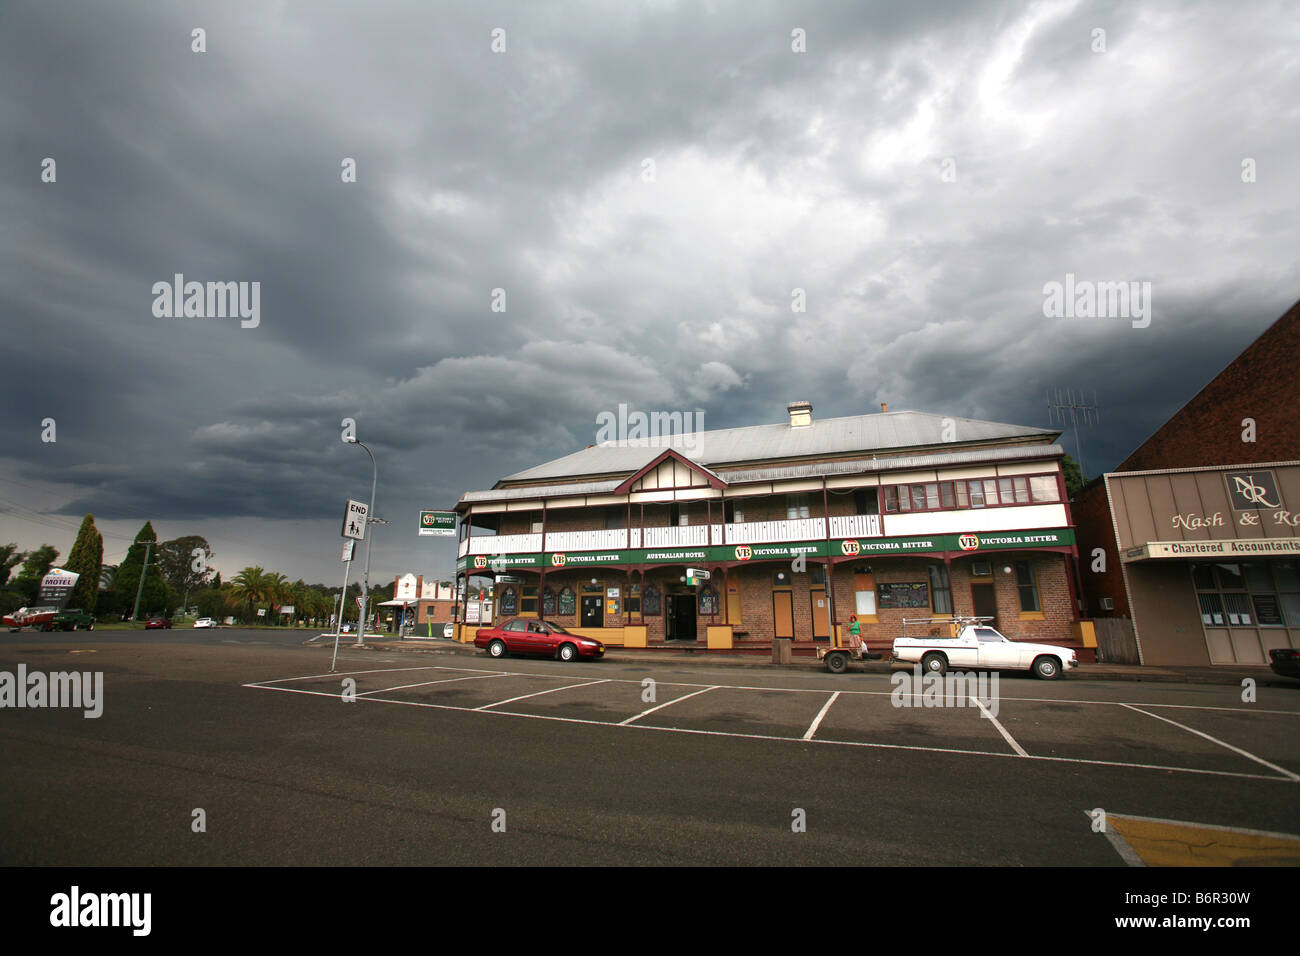 Un orage plane sur l'Hôtel de l'Australie dans le nouveau pays de Galles du Sud ville de Wingham Banque D'Images